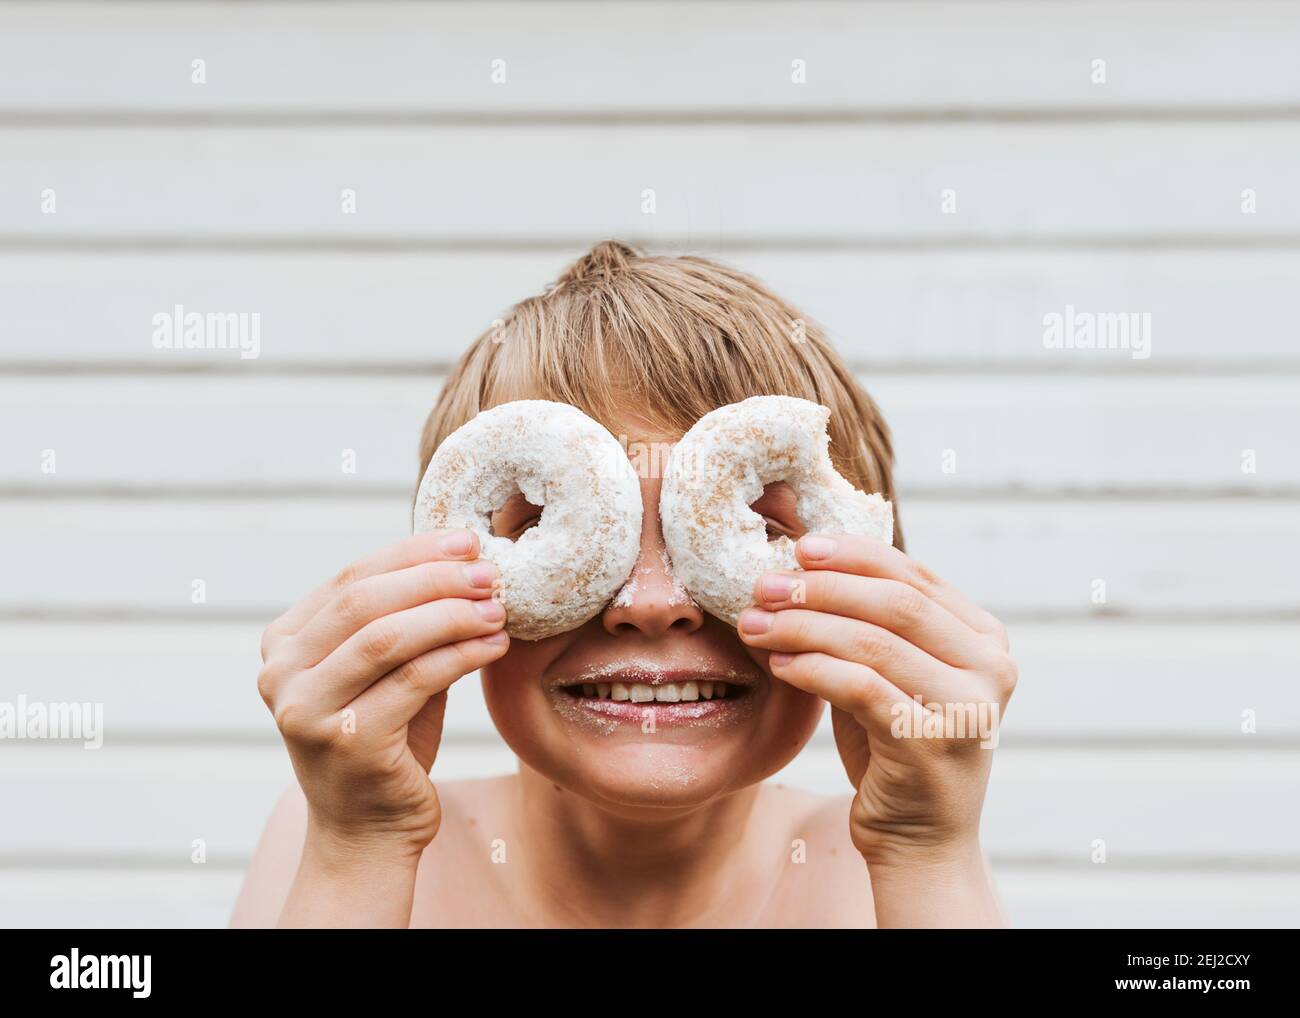 Mein Sohn hielt Donuts an seine Augen und sah durch die Löcher in der Mitte. Stockfoto